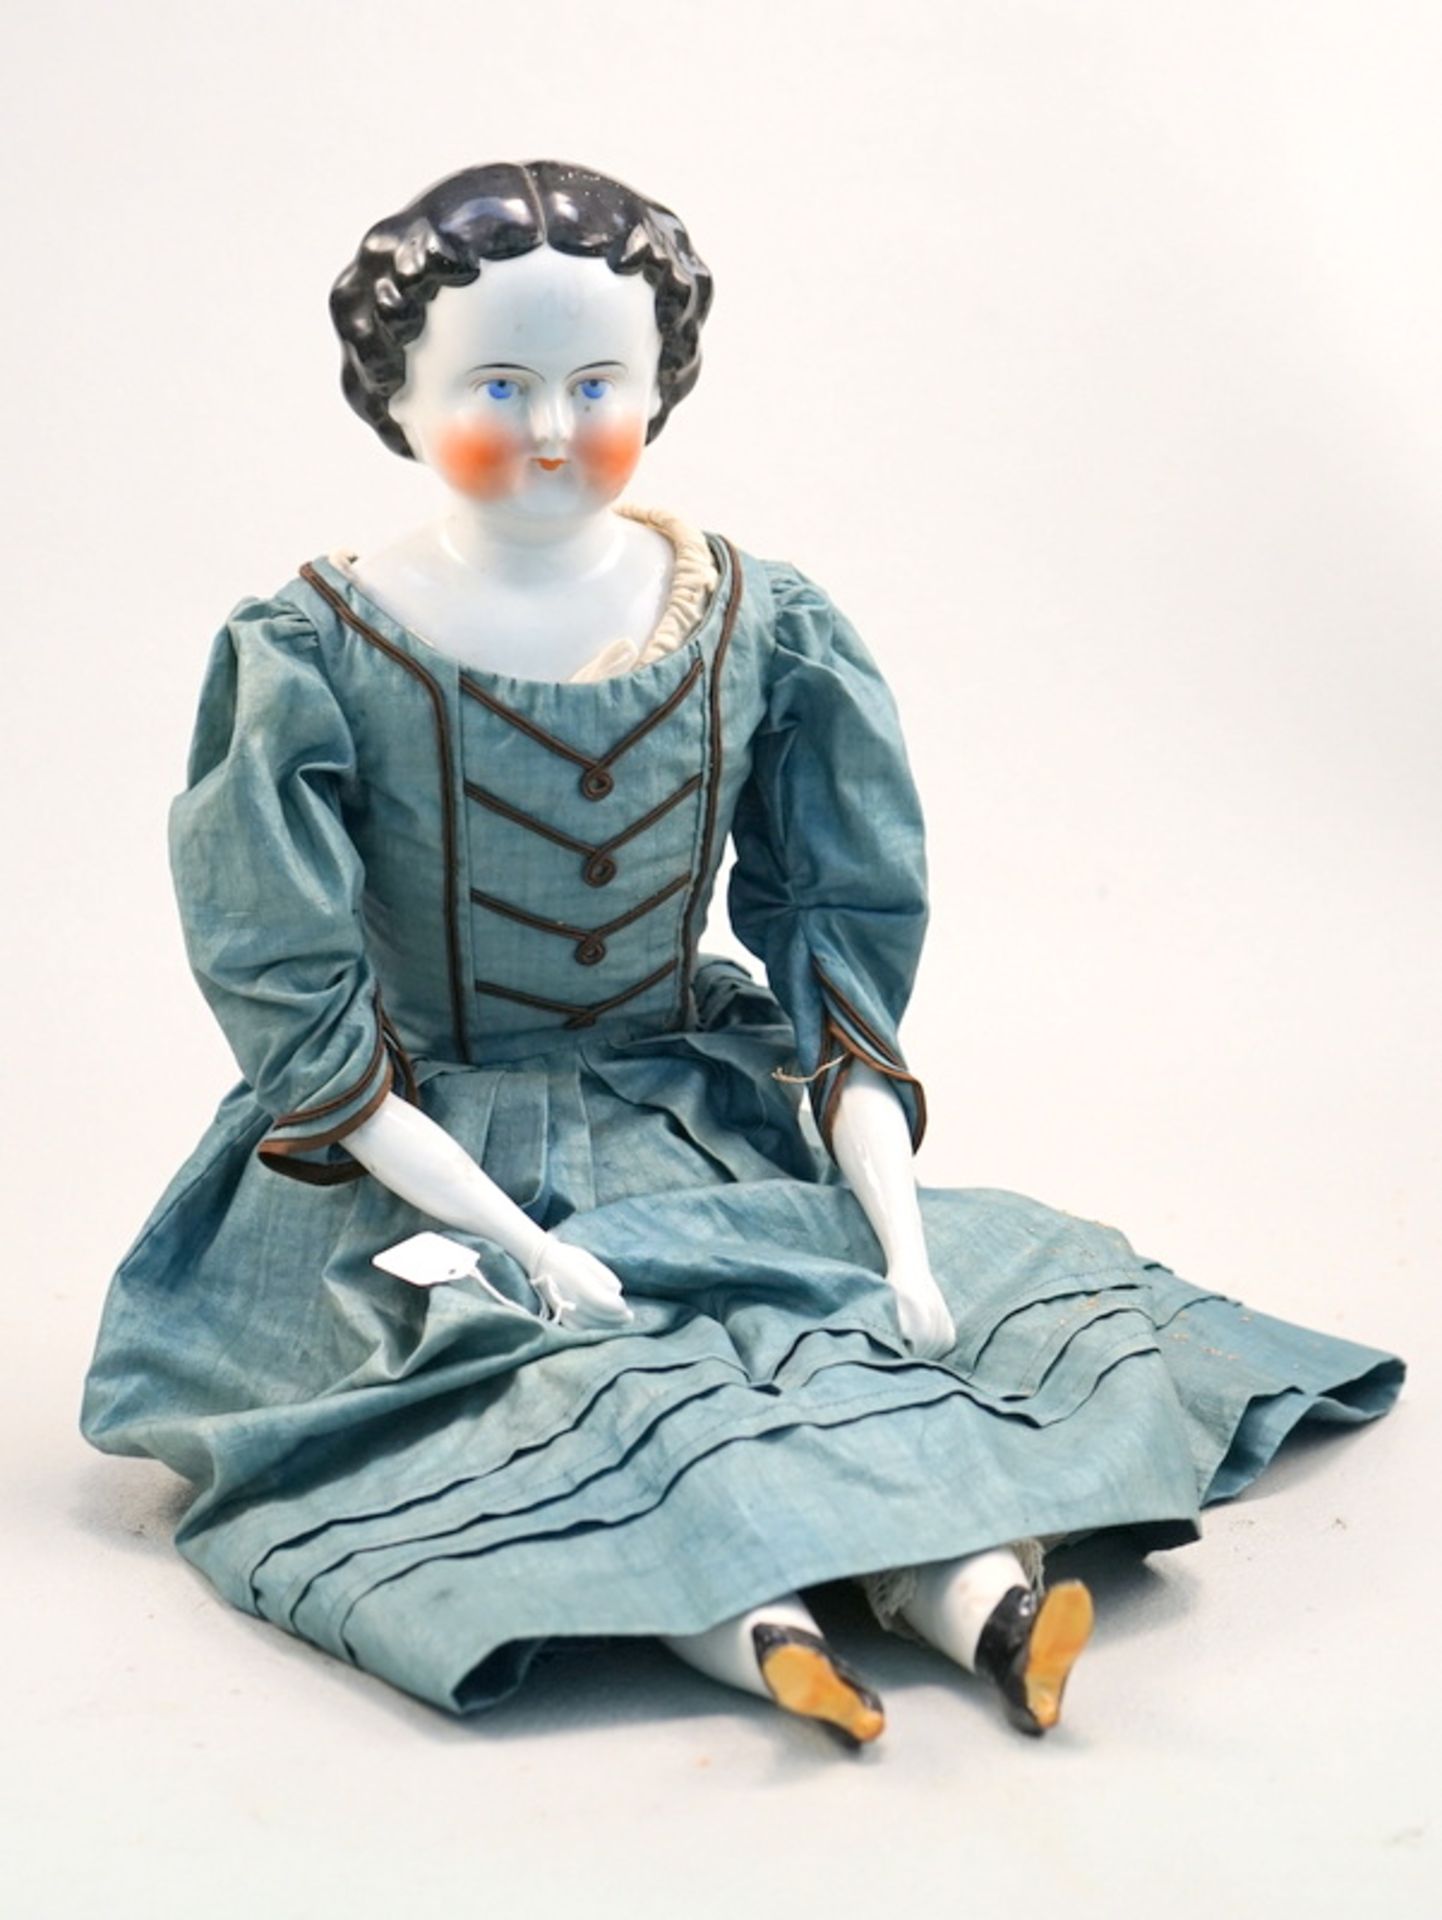 Biedermeier Brustblattkopf Puppe, um 1860,Porzellan, dunkle wellige Haare, mittig gescheitelt,